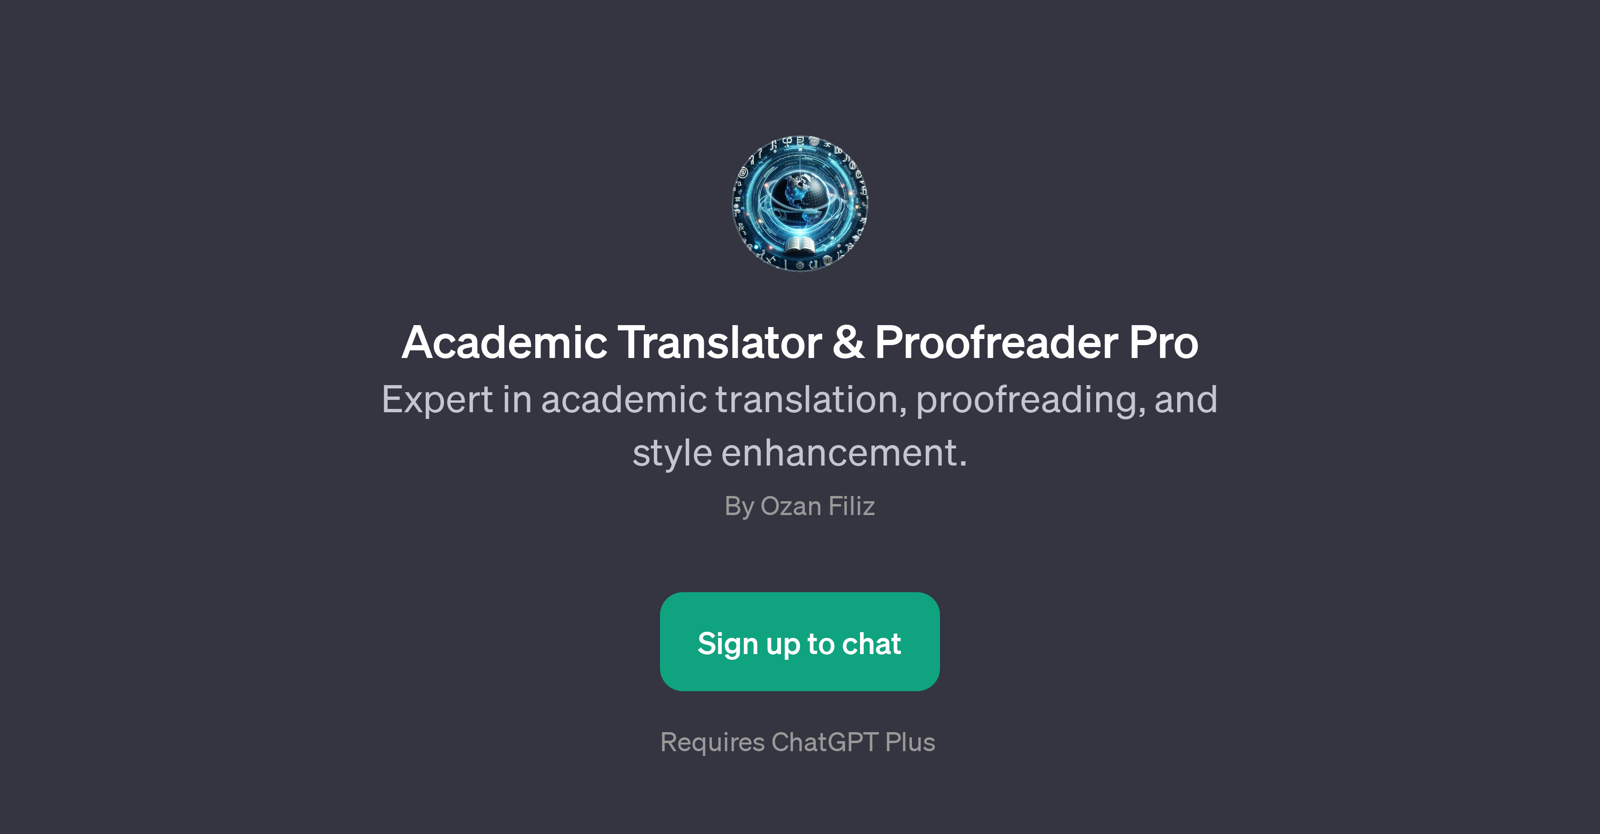 Academic Translator & Proofreader Pro website